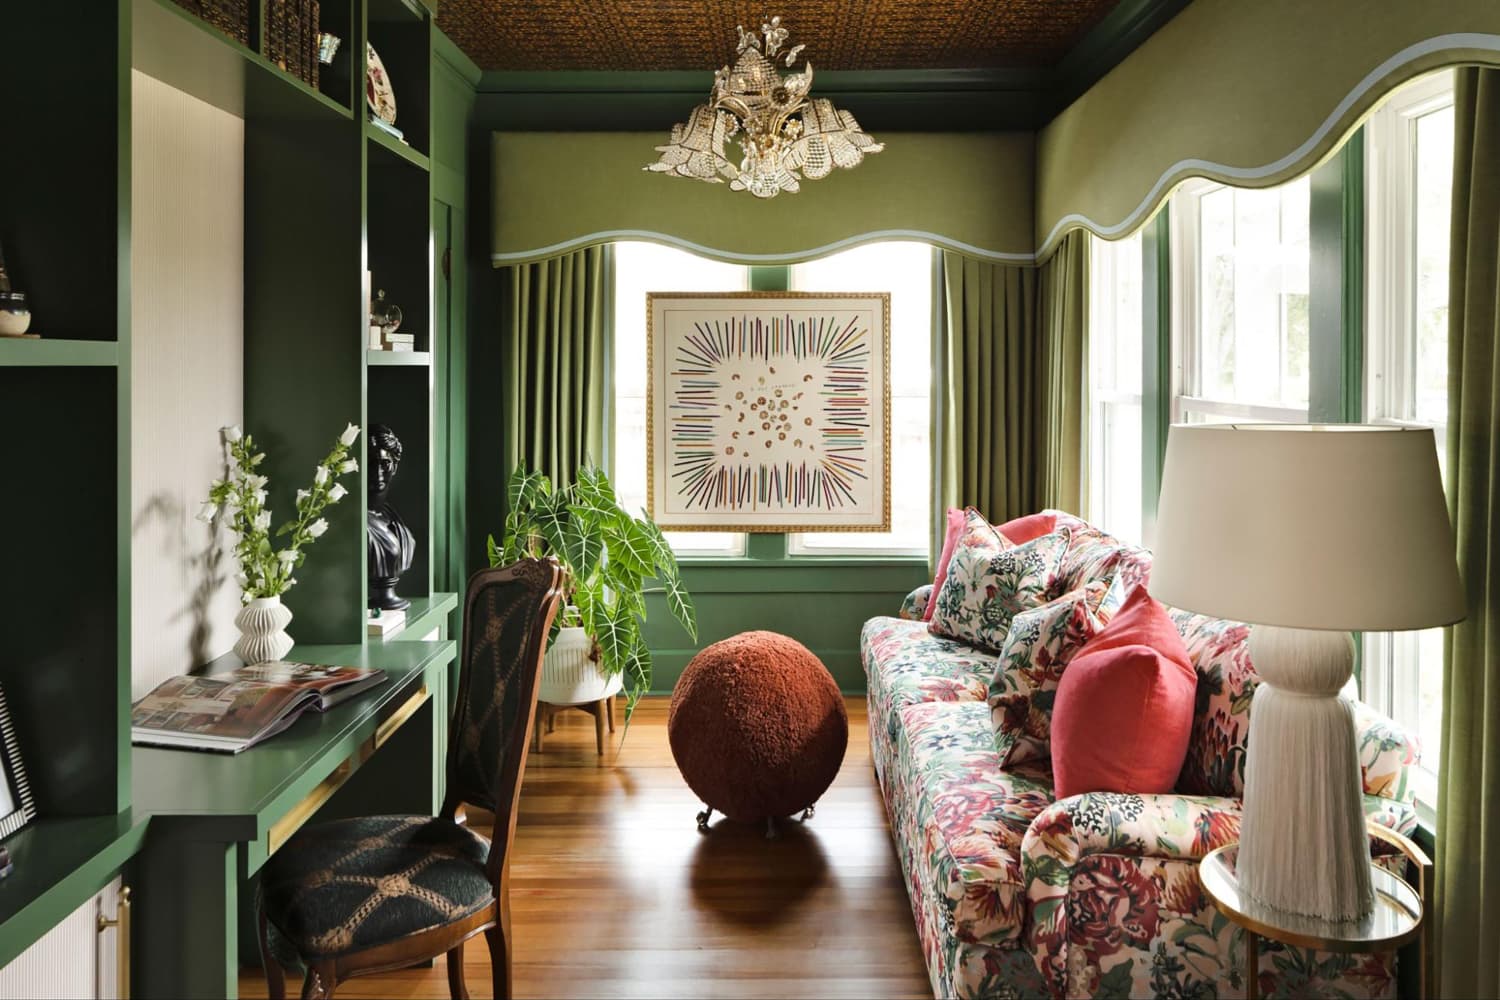 Best Interior Trim Paint Colors According To Designers 8